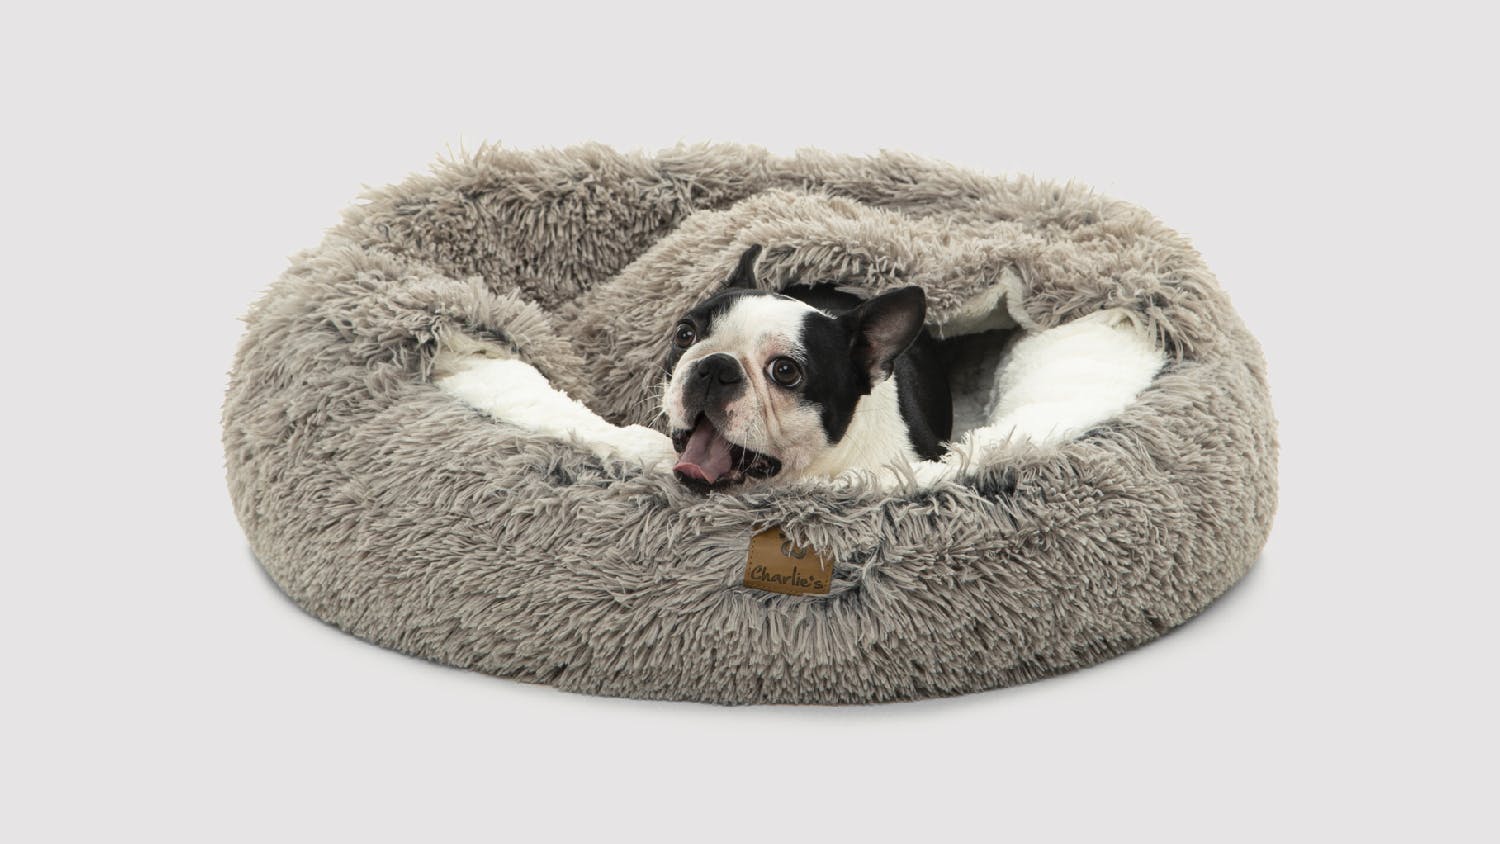 Charlie's "Snookie" Faux Fur Pet Bed w/ Hood Large - Grey